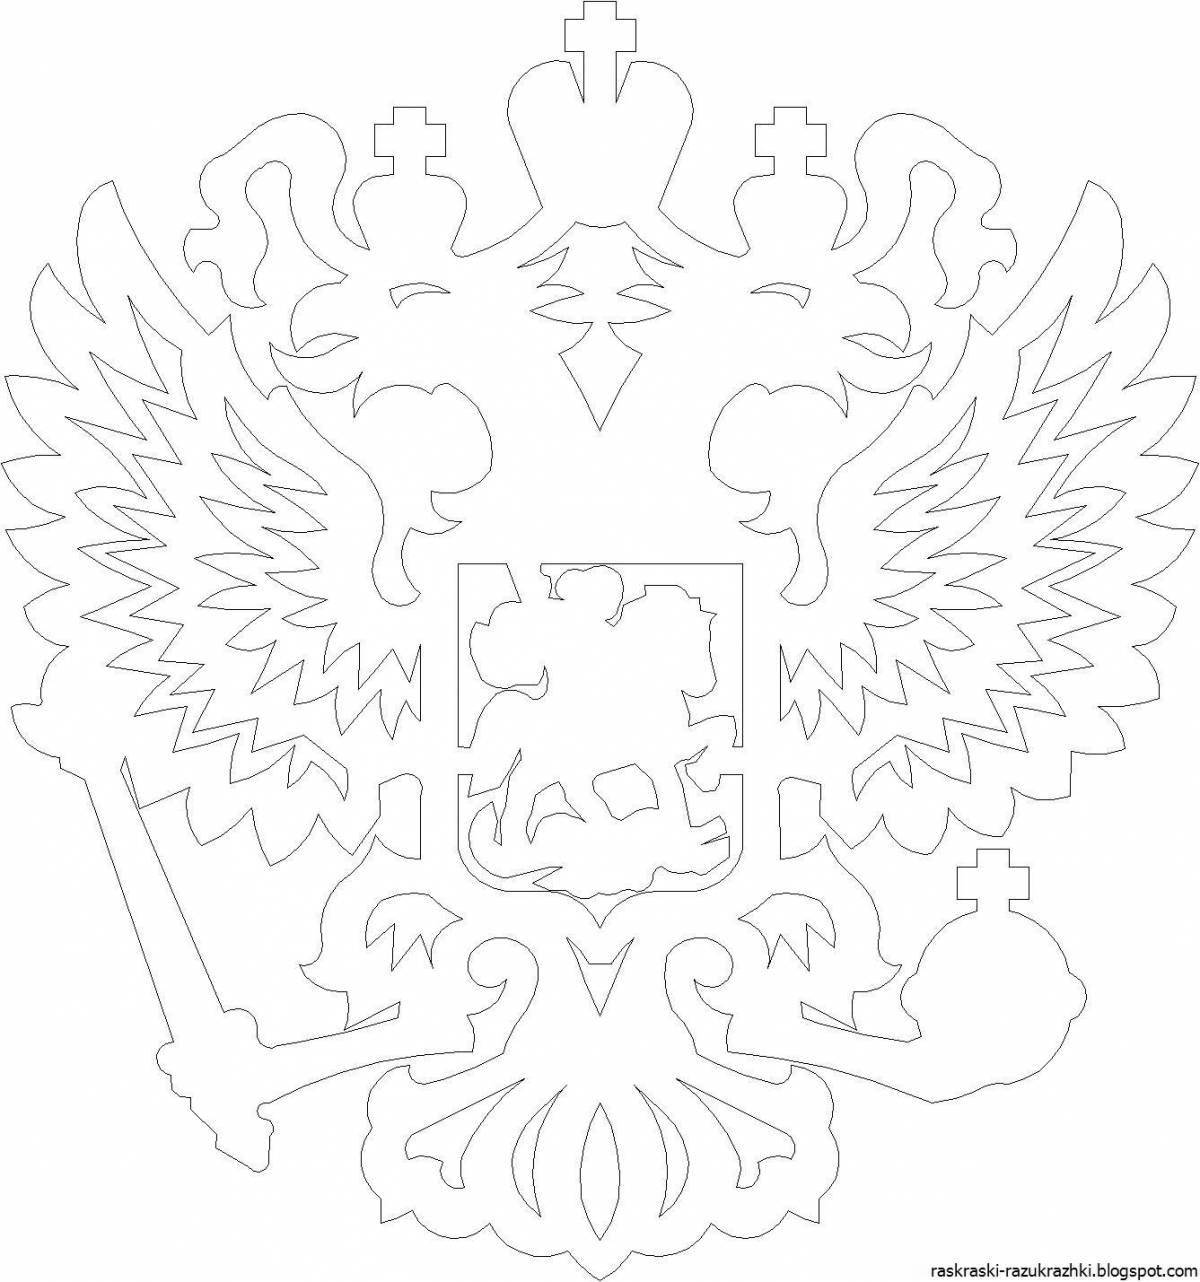 Увлекательный герб российской федерации для учащихся